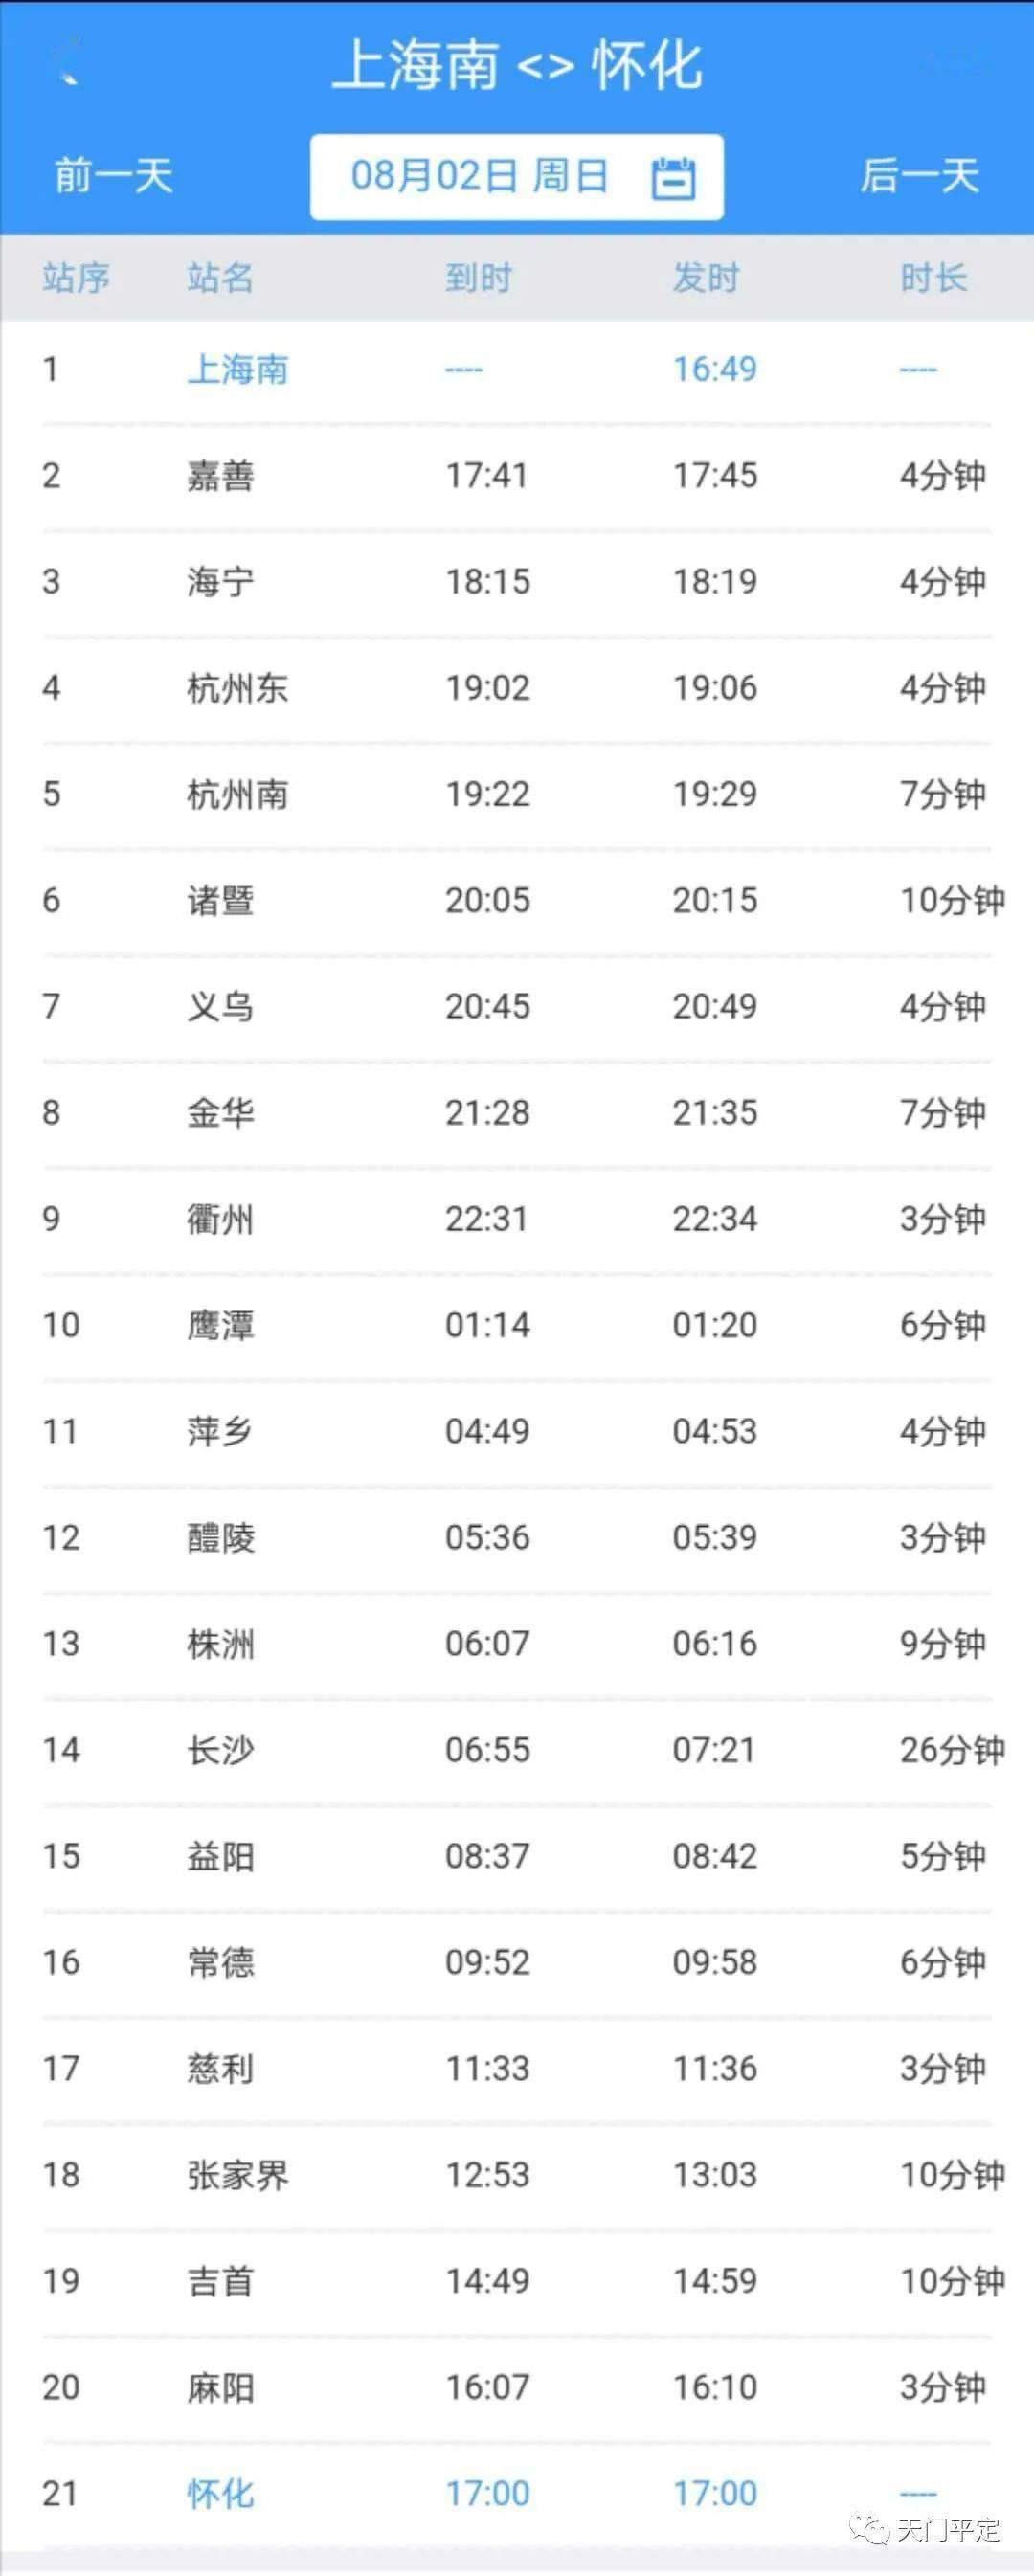 自8月5日起恢复开行昆明至长春k2286次旅客列车